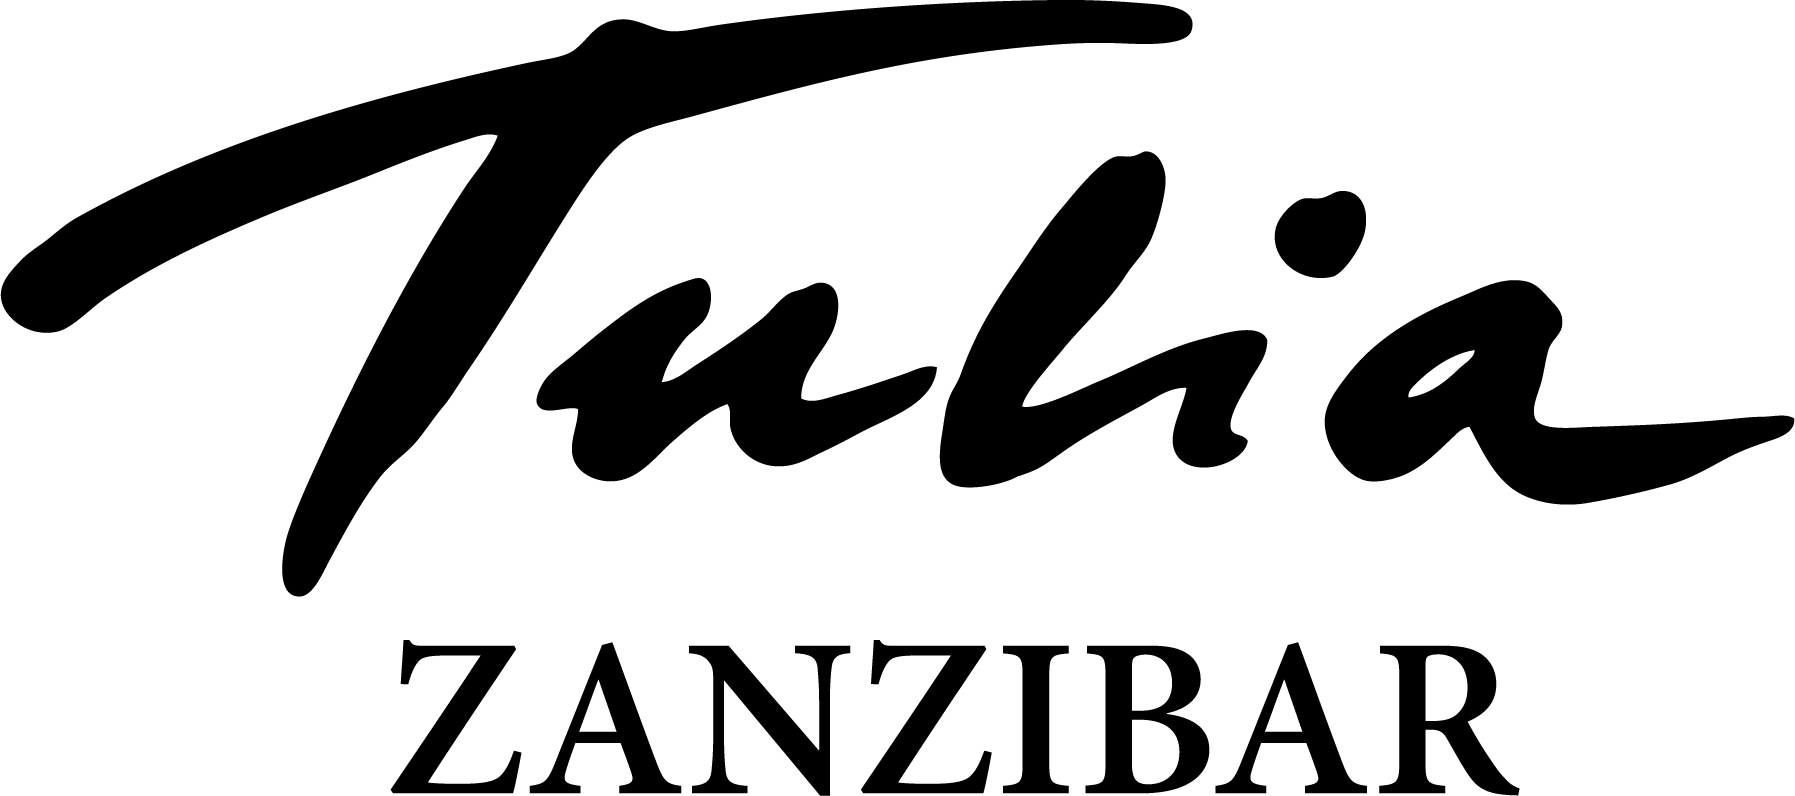 Tulia Zanzibar